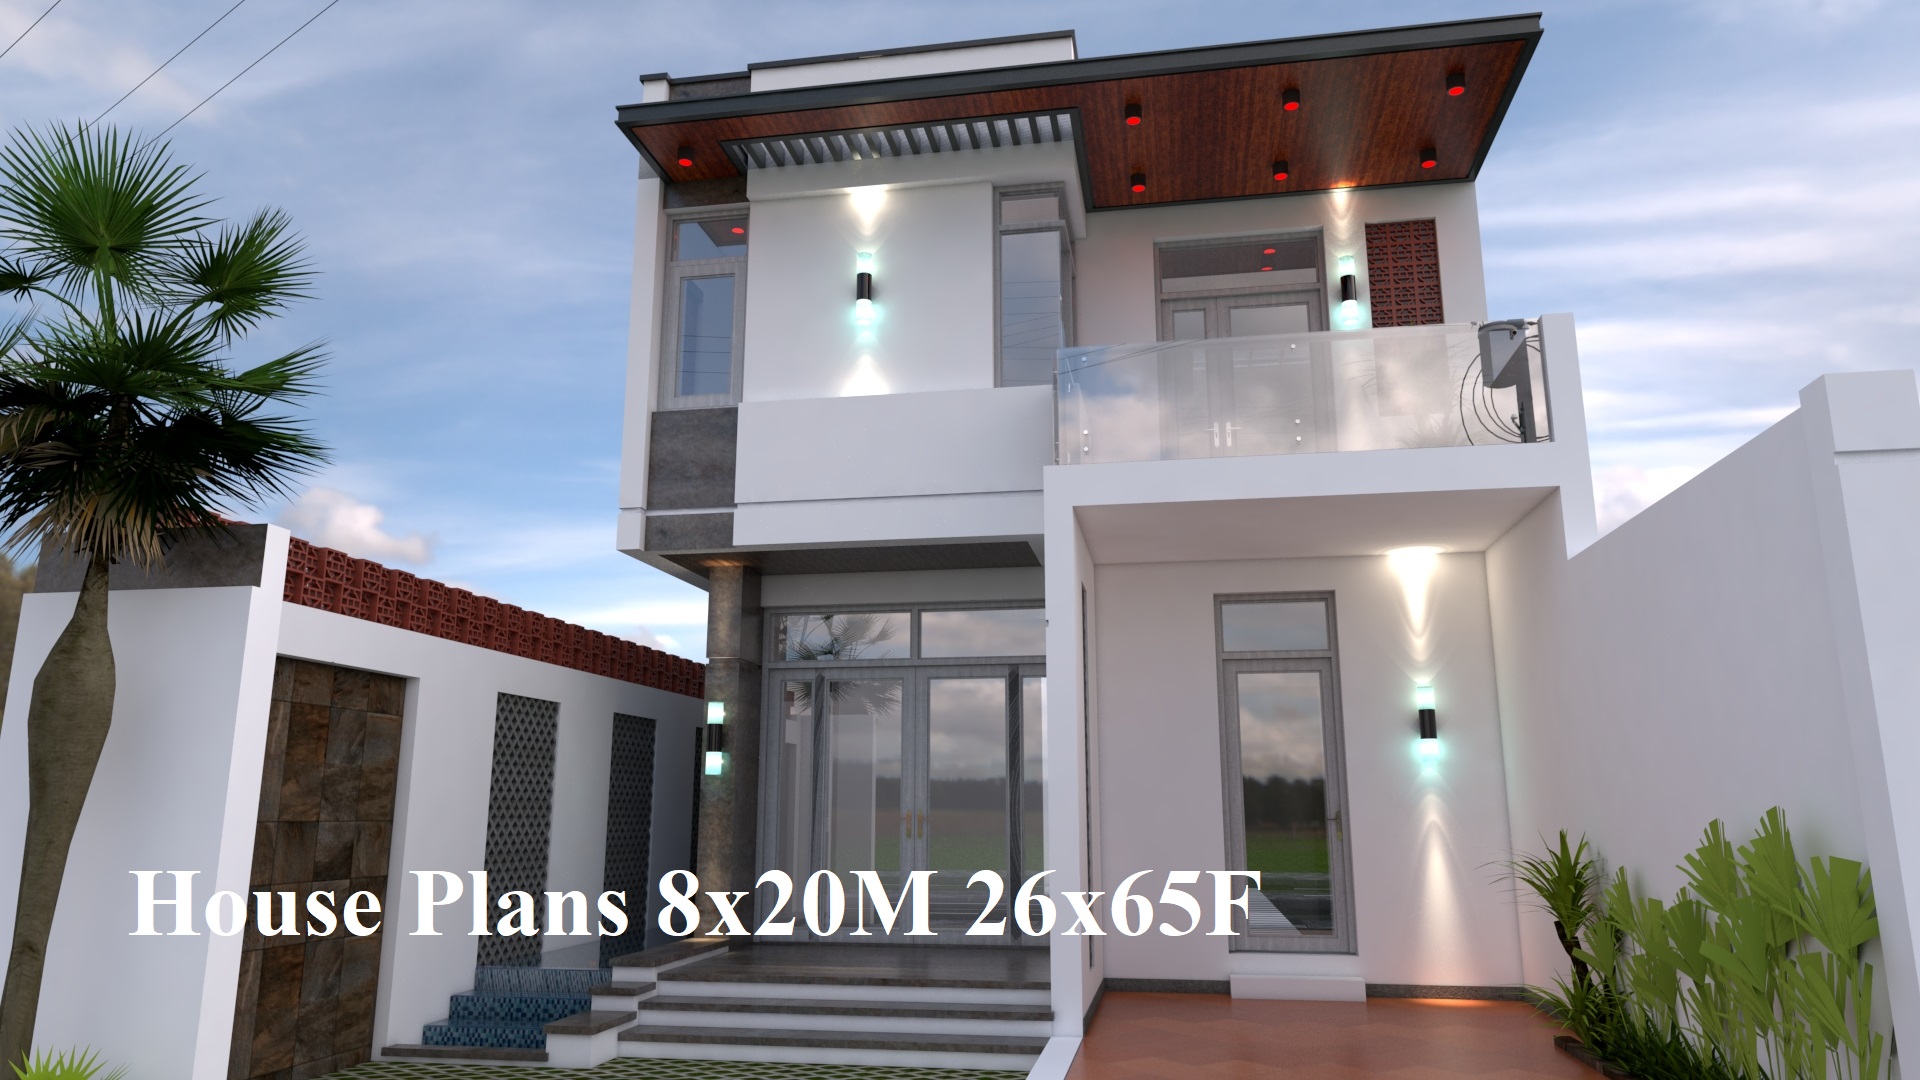 House Plans 8x20M 26x65F